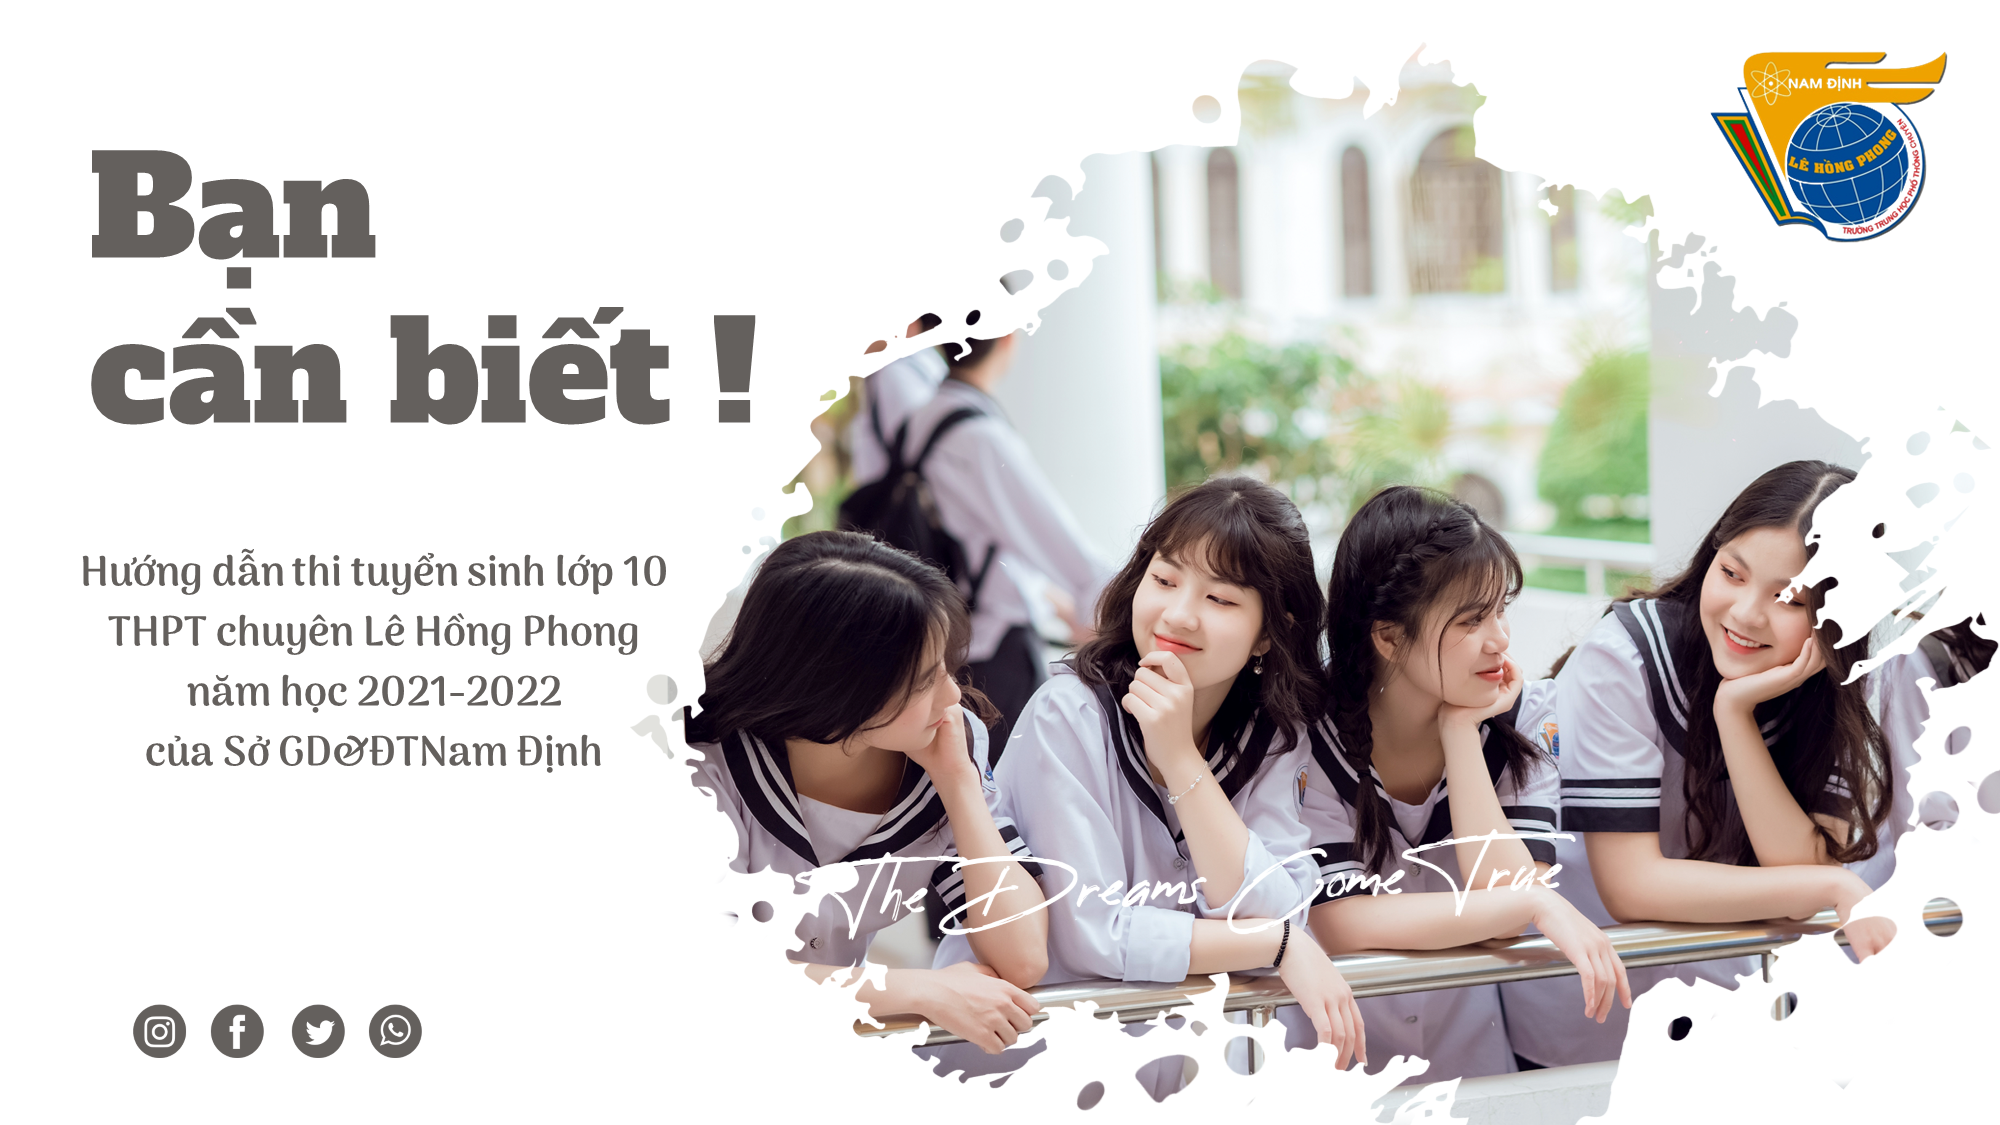 Hướng dẫn thi tuyển sinh lớp 10 THPT chuyên Lê Hồng Phong năm học 2021 - 2022 của Sở Giáo dục và đào tạo Nam Định